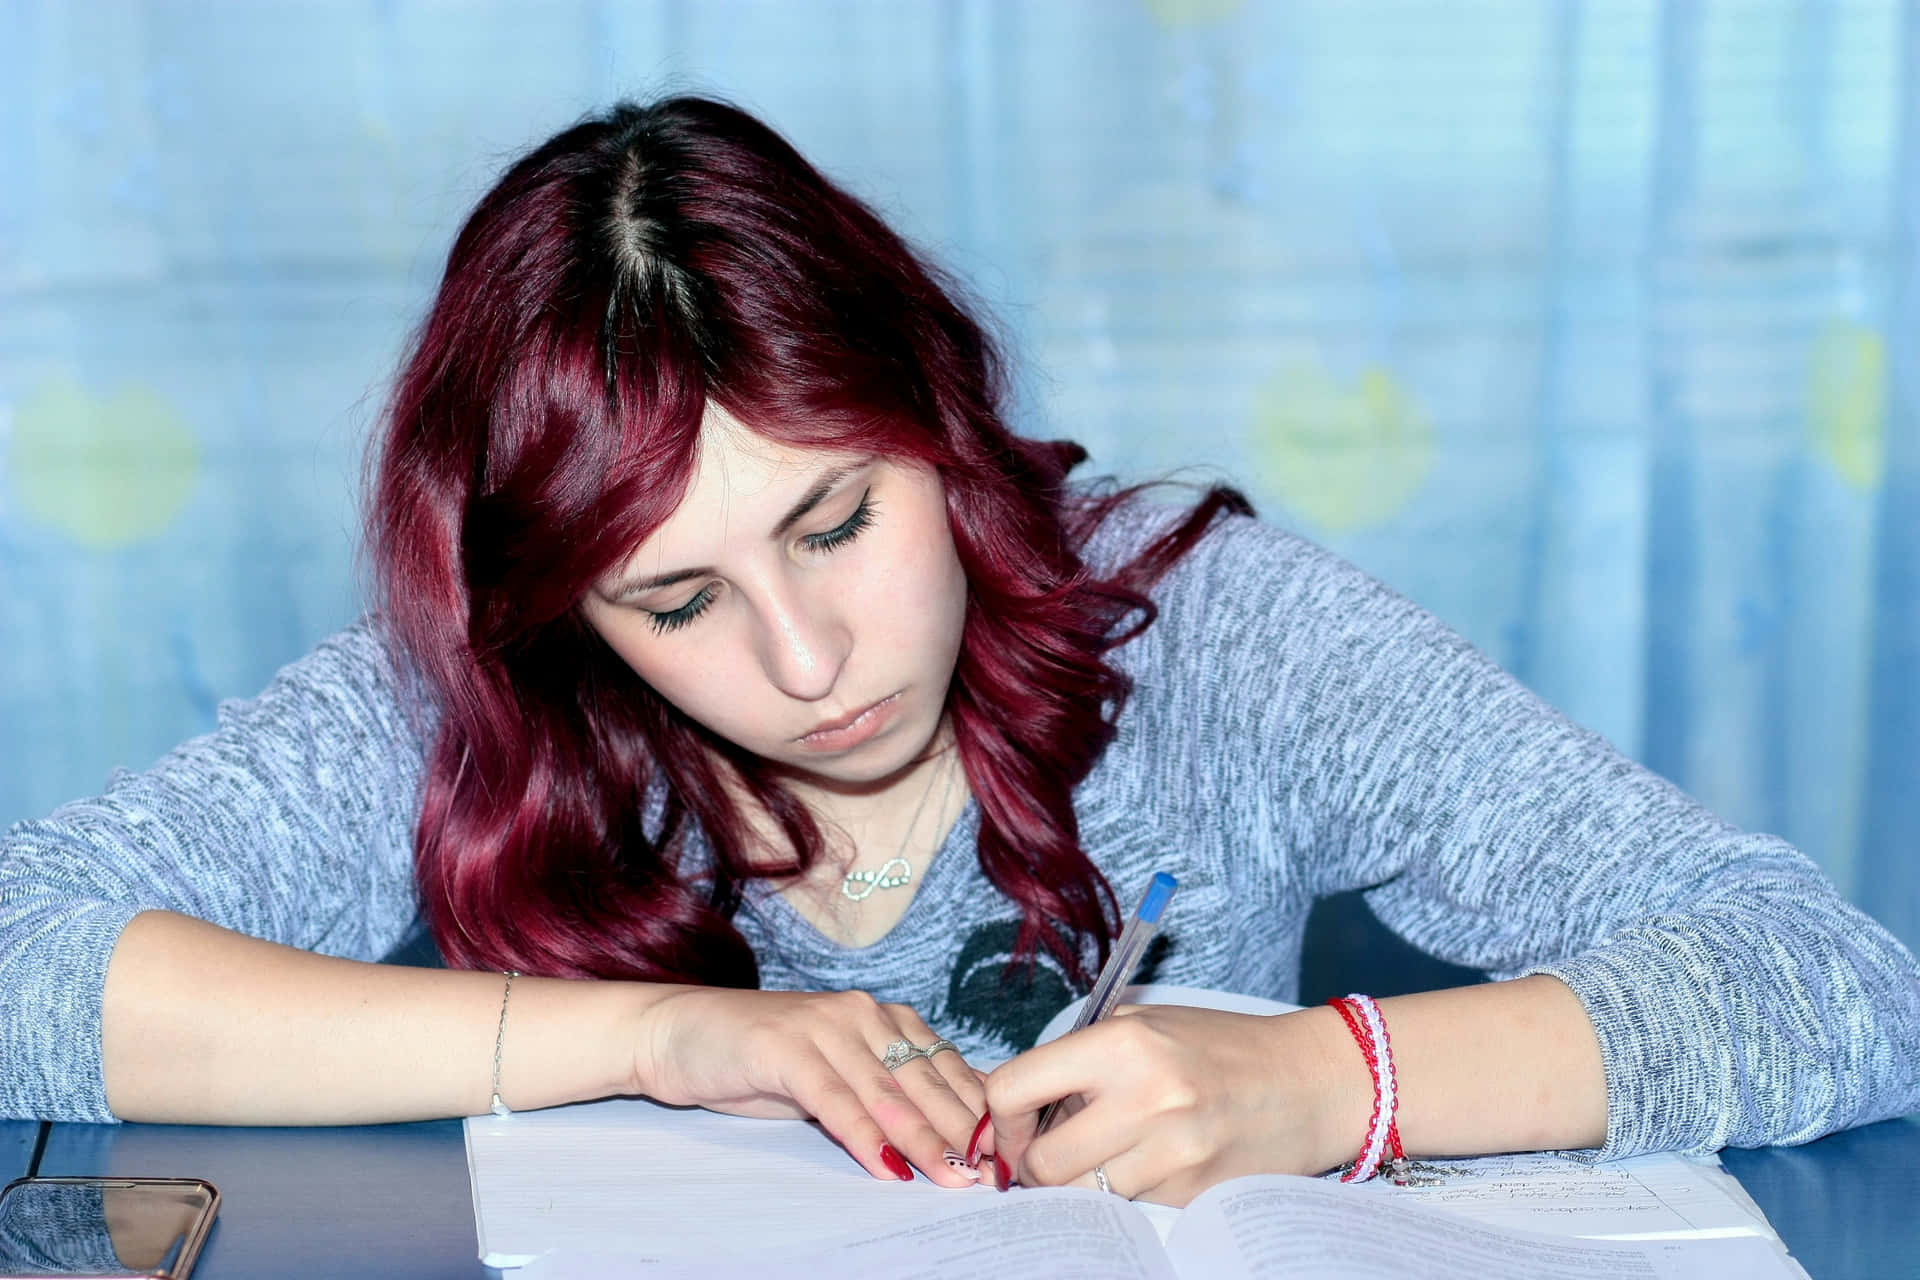 Imagende Una Chica Estudiando Y Escribiendo En Un Cuaderno.